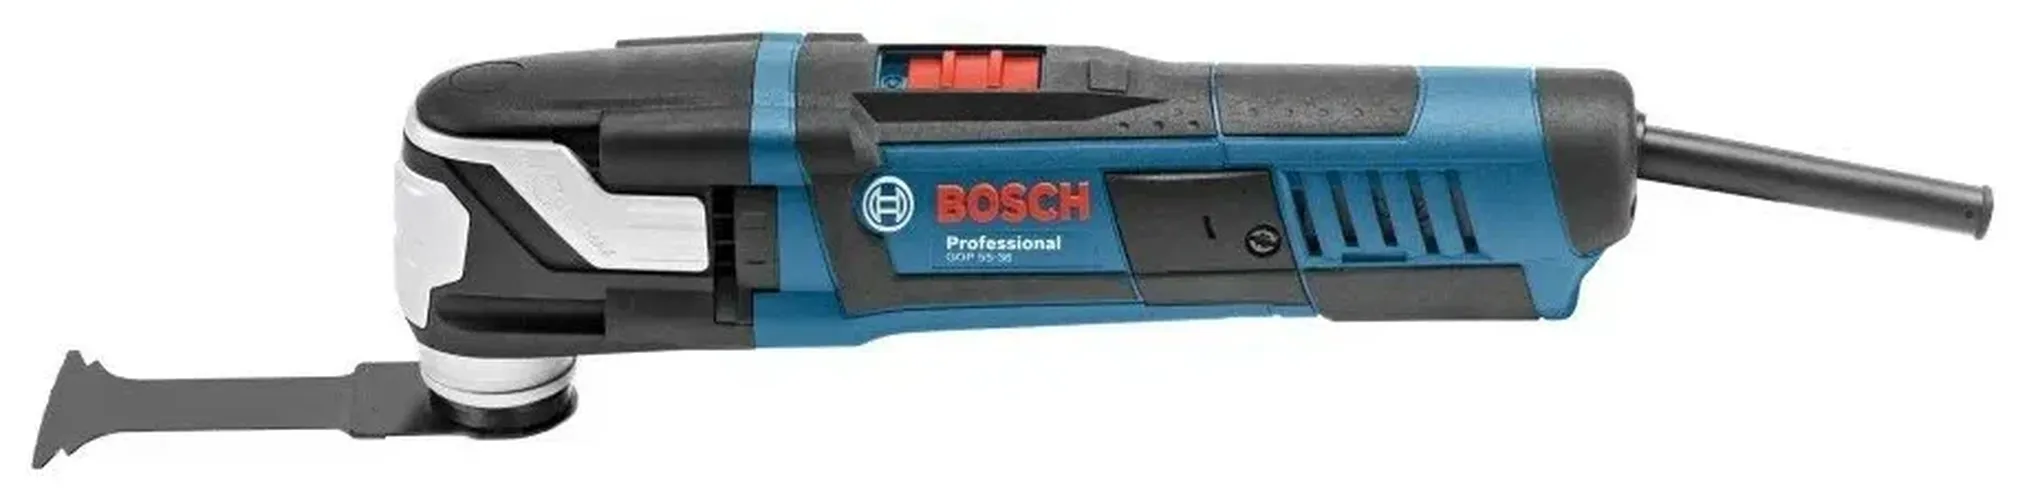 Универсальный резак Bosch GOP 55-36, фото